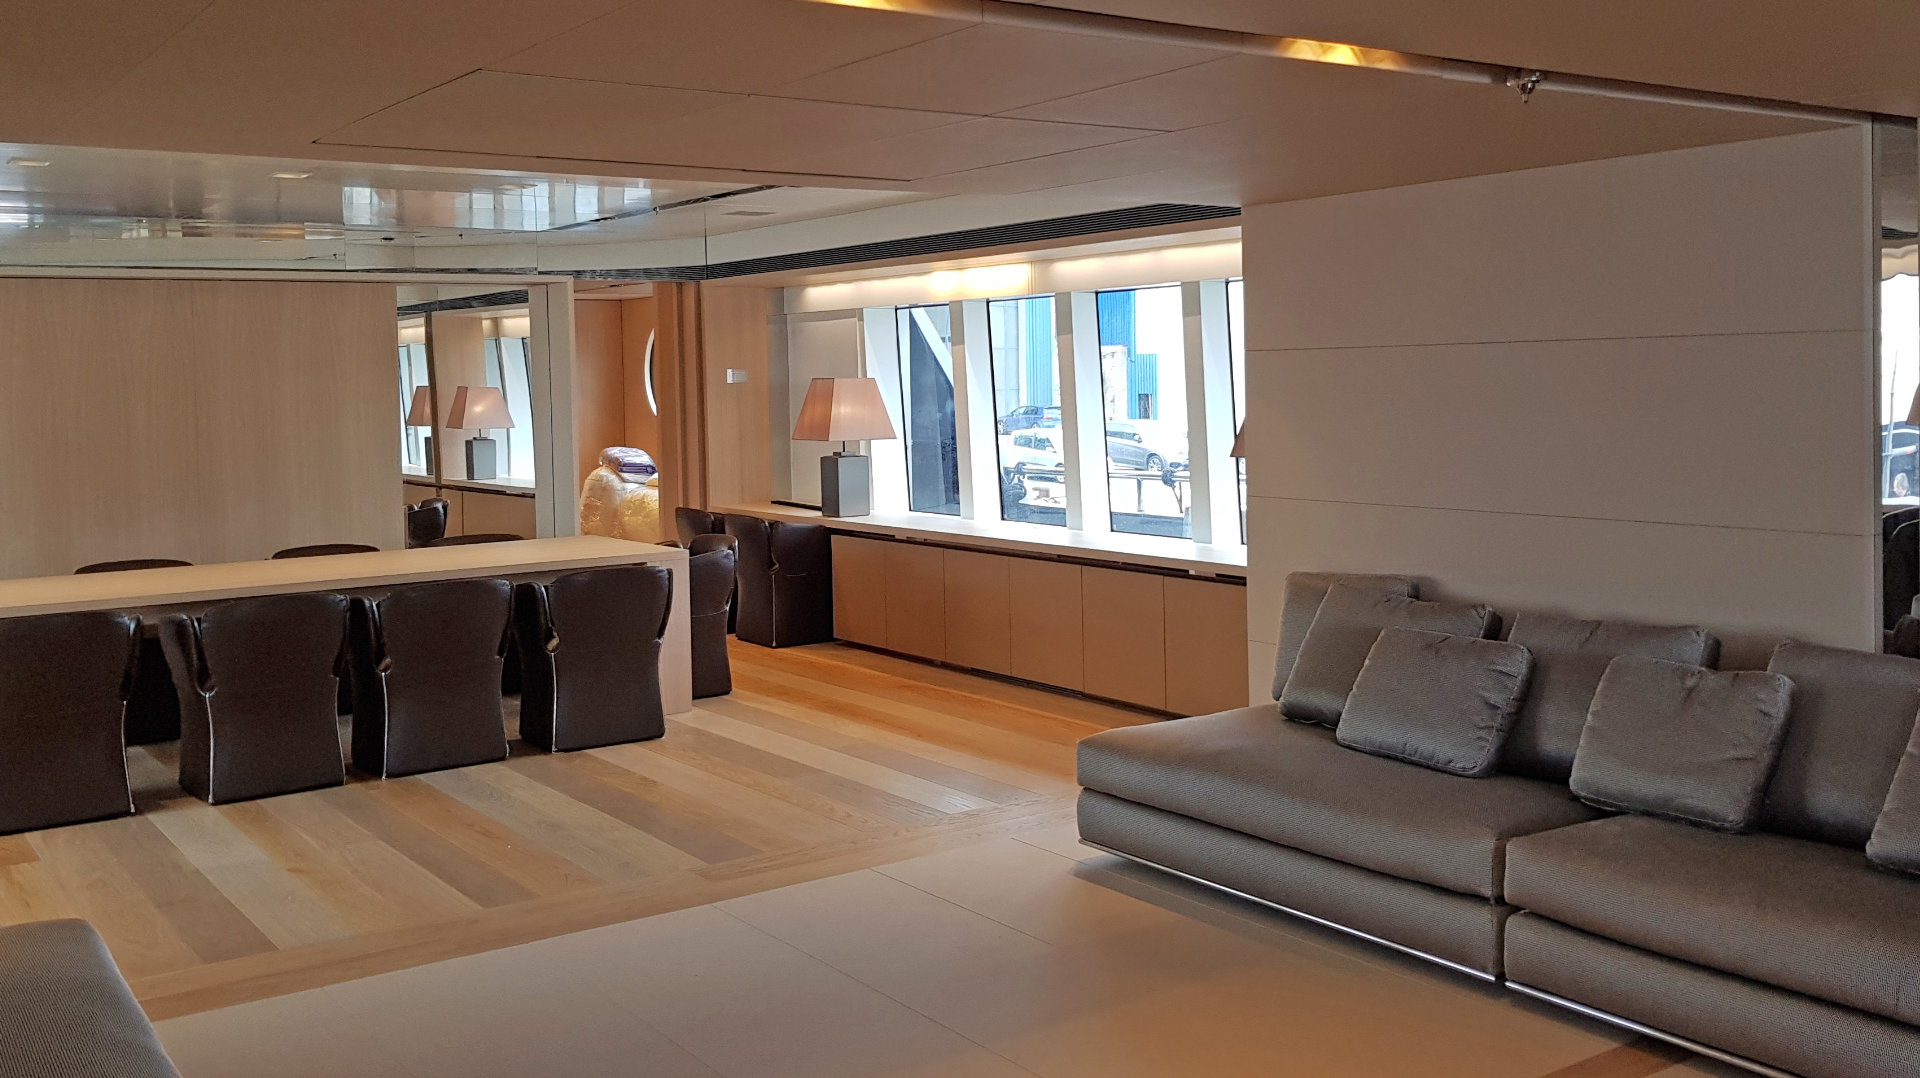  Hanák nábytek luxusní jachta obývací pokoj